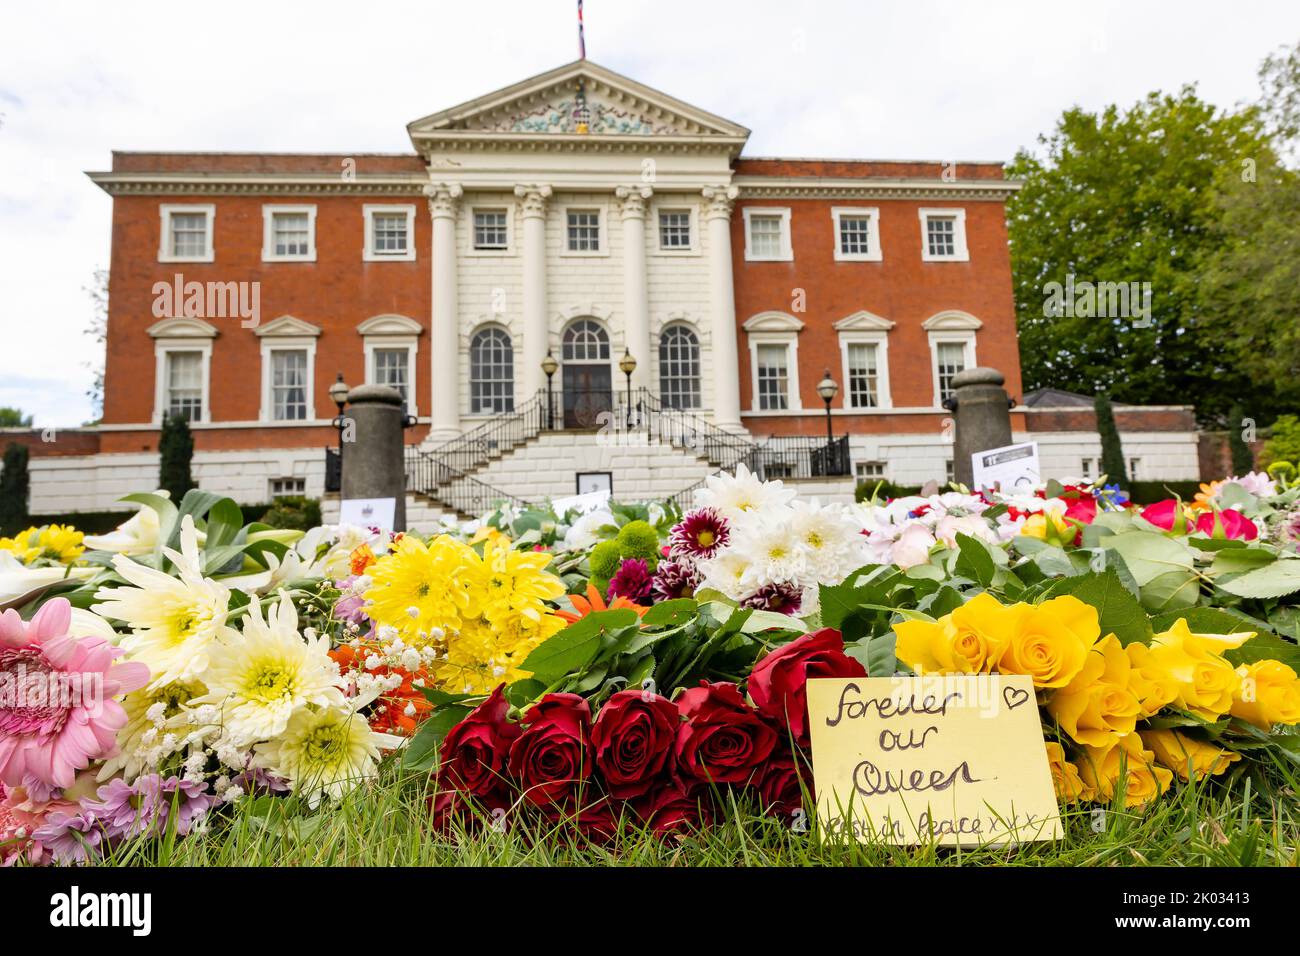 Hôtel de ville de Warrington, Cheshire, Royaume-Uni. 09th septembre 2022. Royaume-Uni - fleurs placées devant l'hôtel de ville de Warrington posées par des membres du public à l'occasion du décès de notre reine Elizabeth II crédit: John Hopkins/Alay Live News Banque D'Images